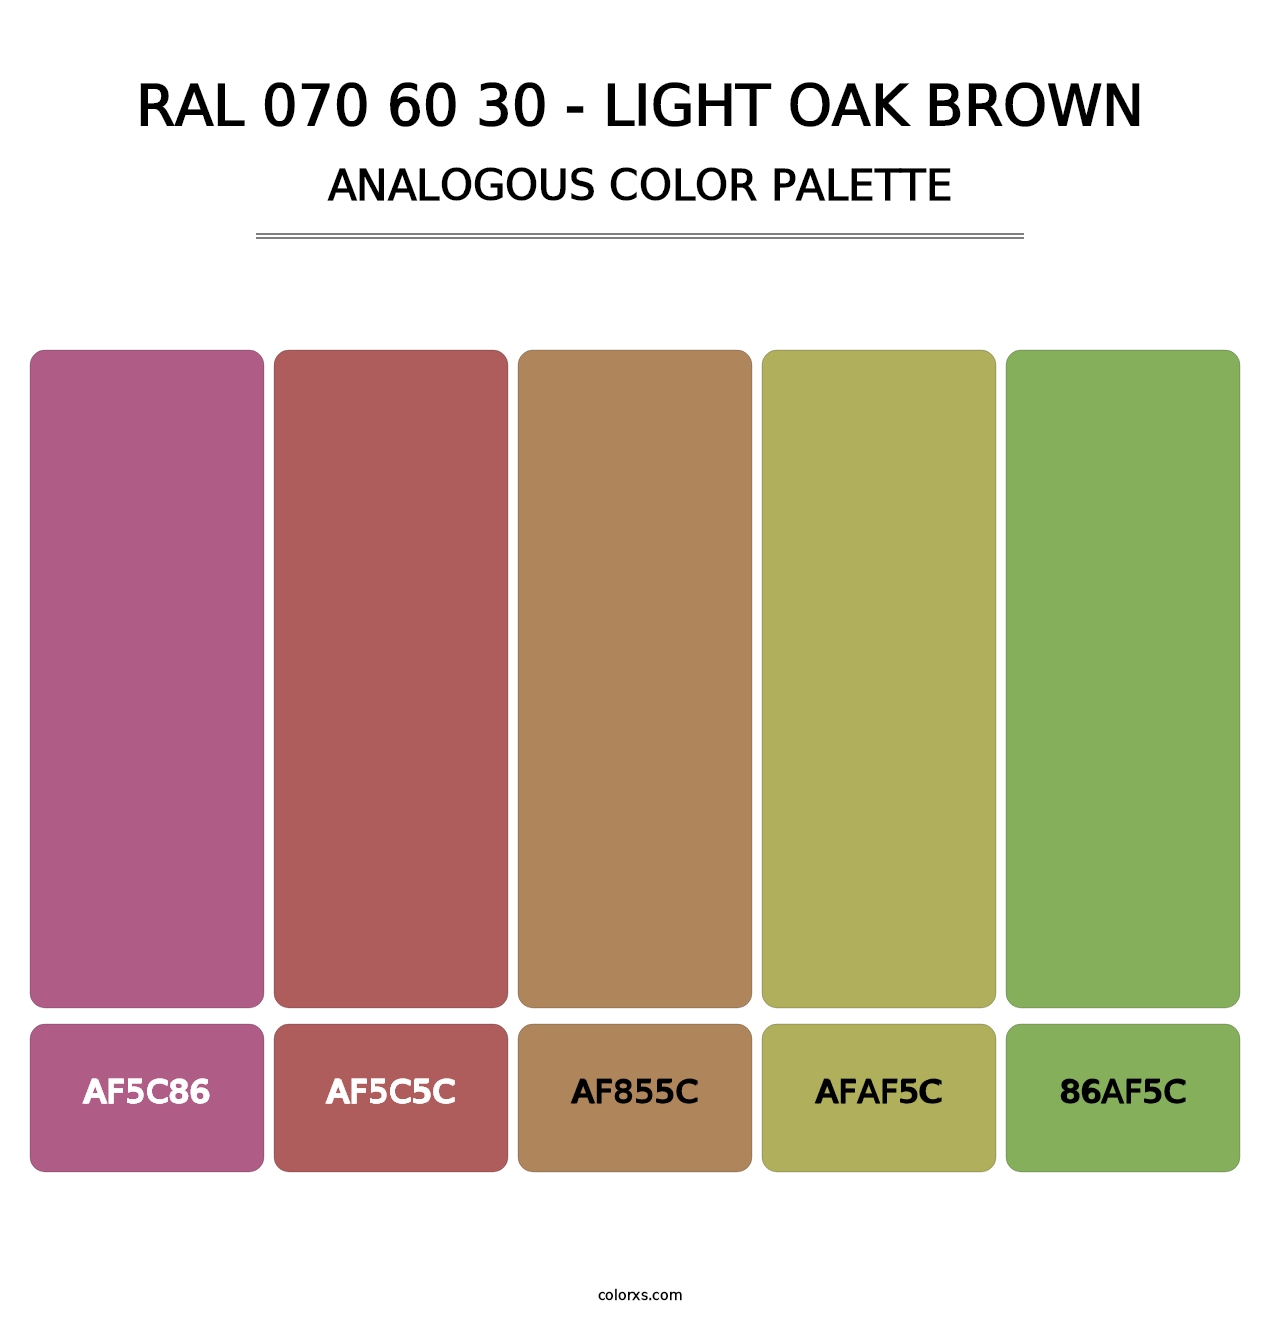 RAL 070 60 30 - Light Oak Brown - Analogous Color Palette